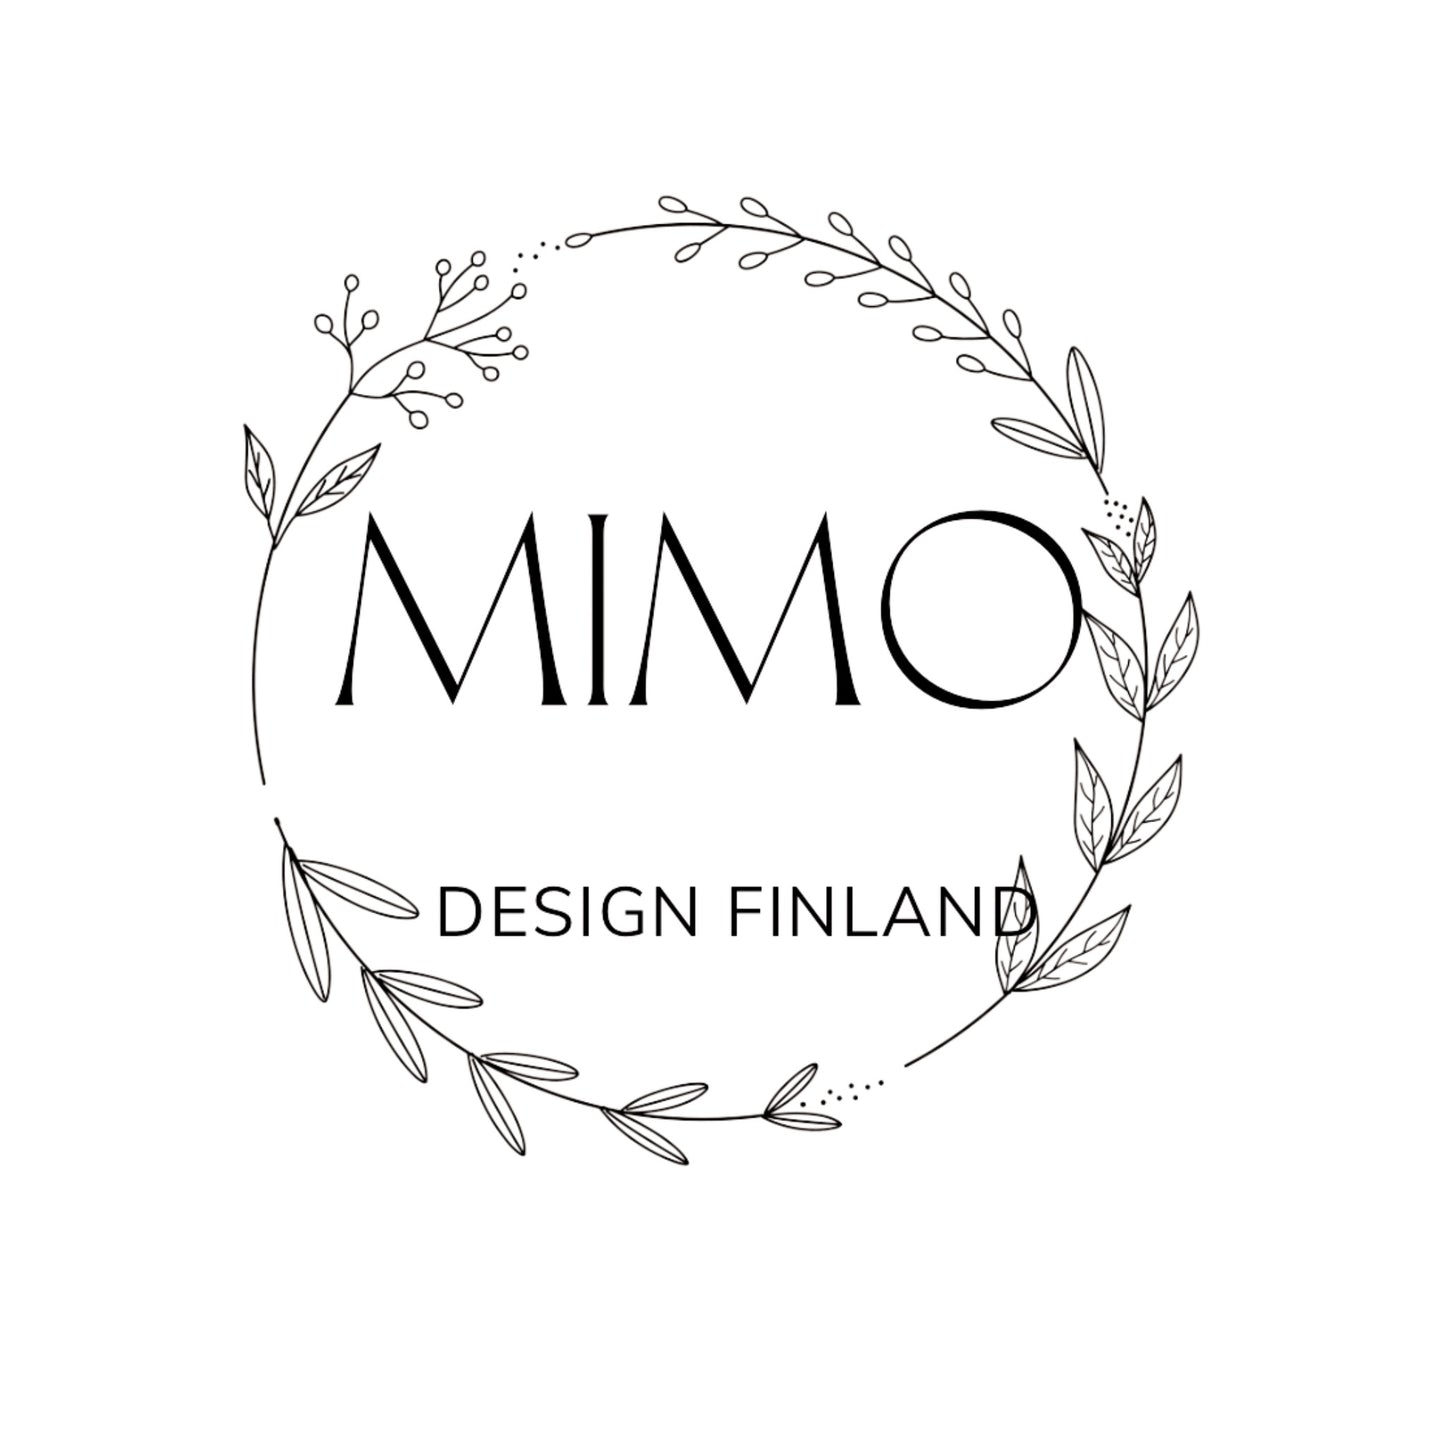 Mimo Design Finlandin lahjakortti